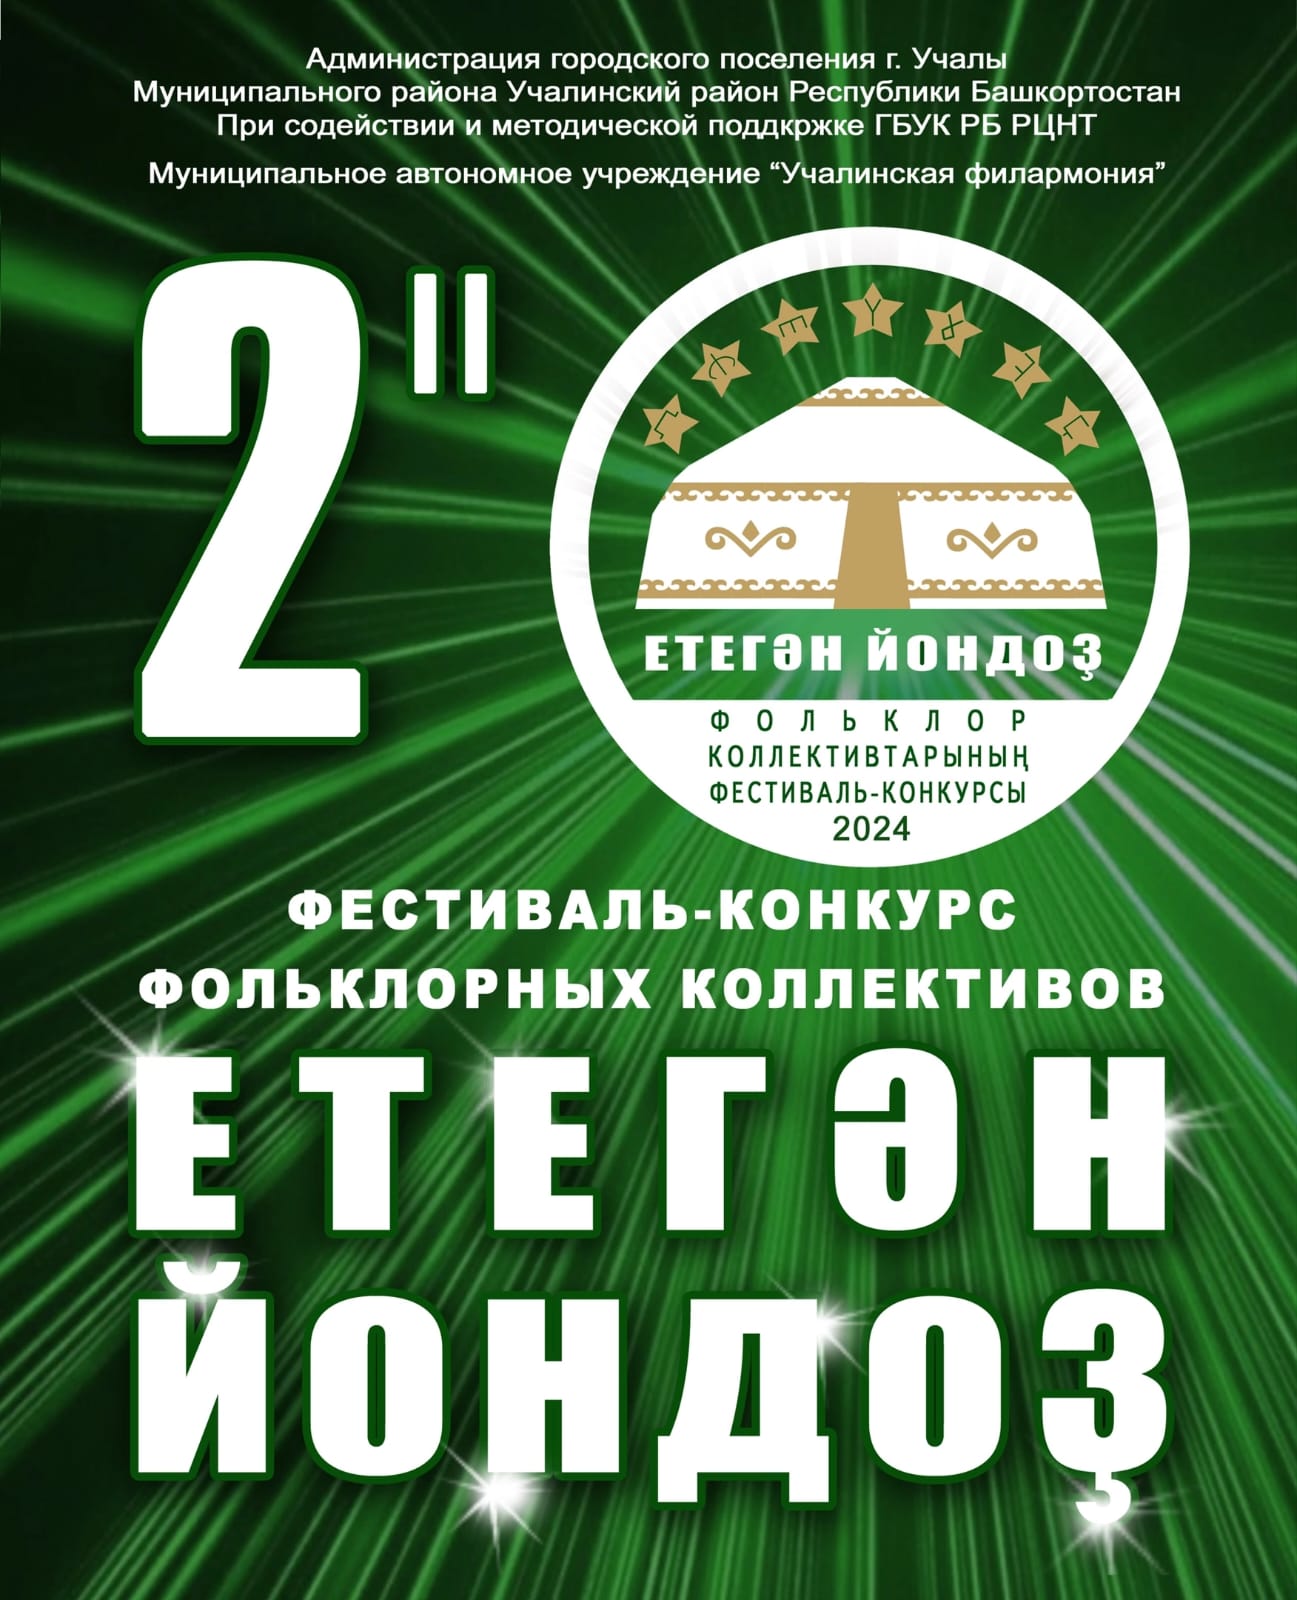 Прием заявок на участие в фестивале-конкурсе «Етегән йондоҙ – 2024» продлевается до 31 января